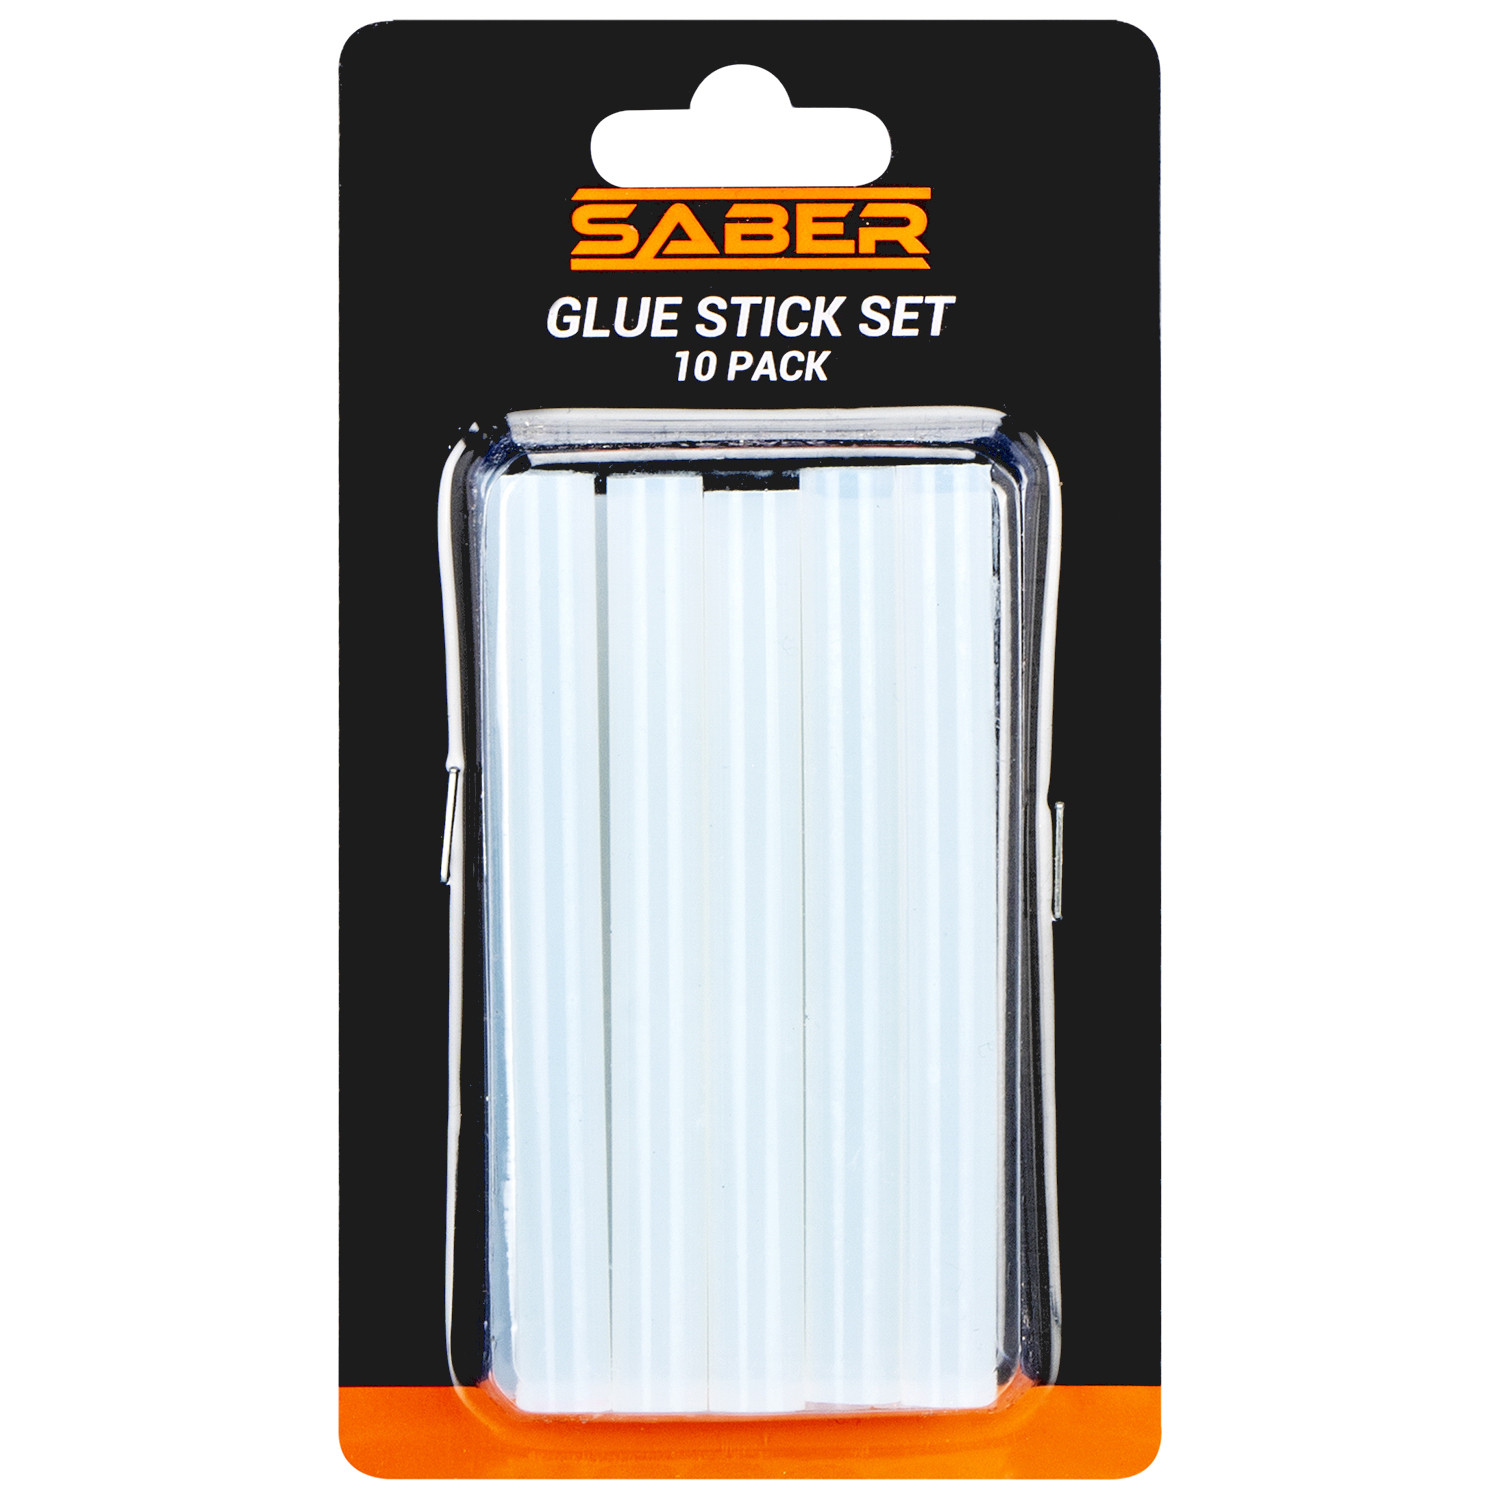 Saber Glue Stick Set 10 Pack Image